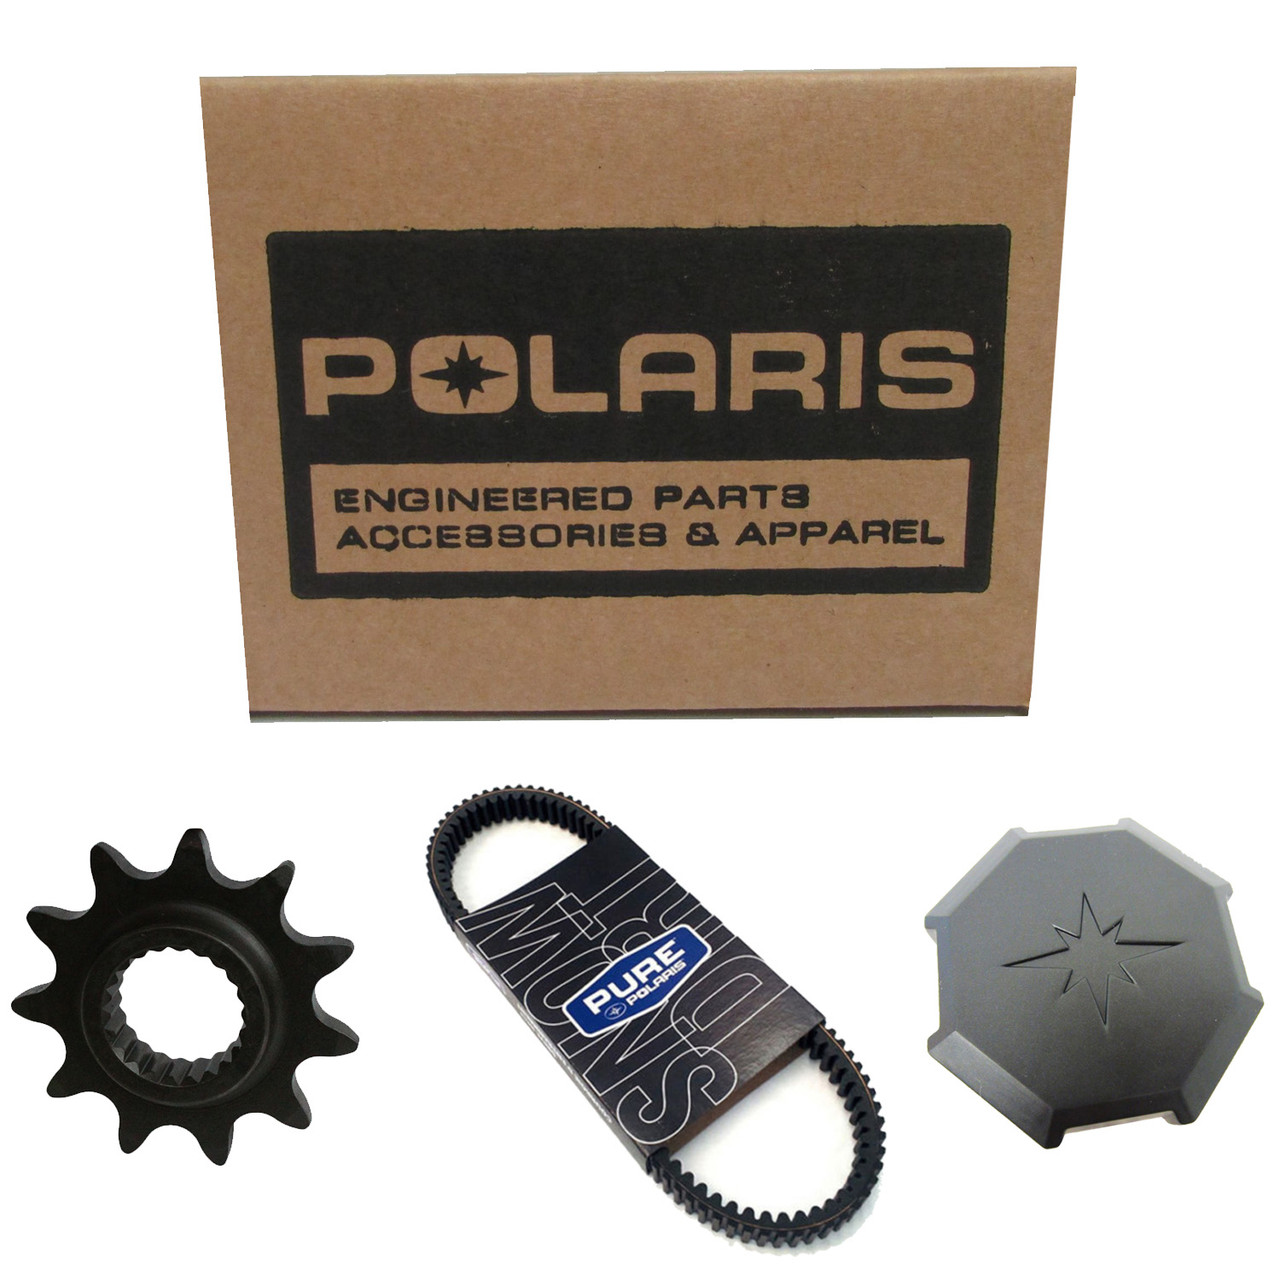 Polaris New OEM Man-Own, 19 Rzr Xp 1000, 9929134